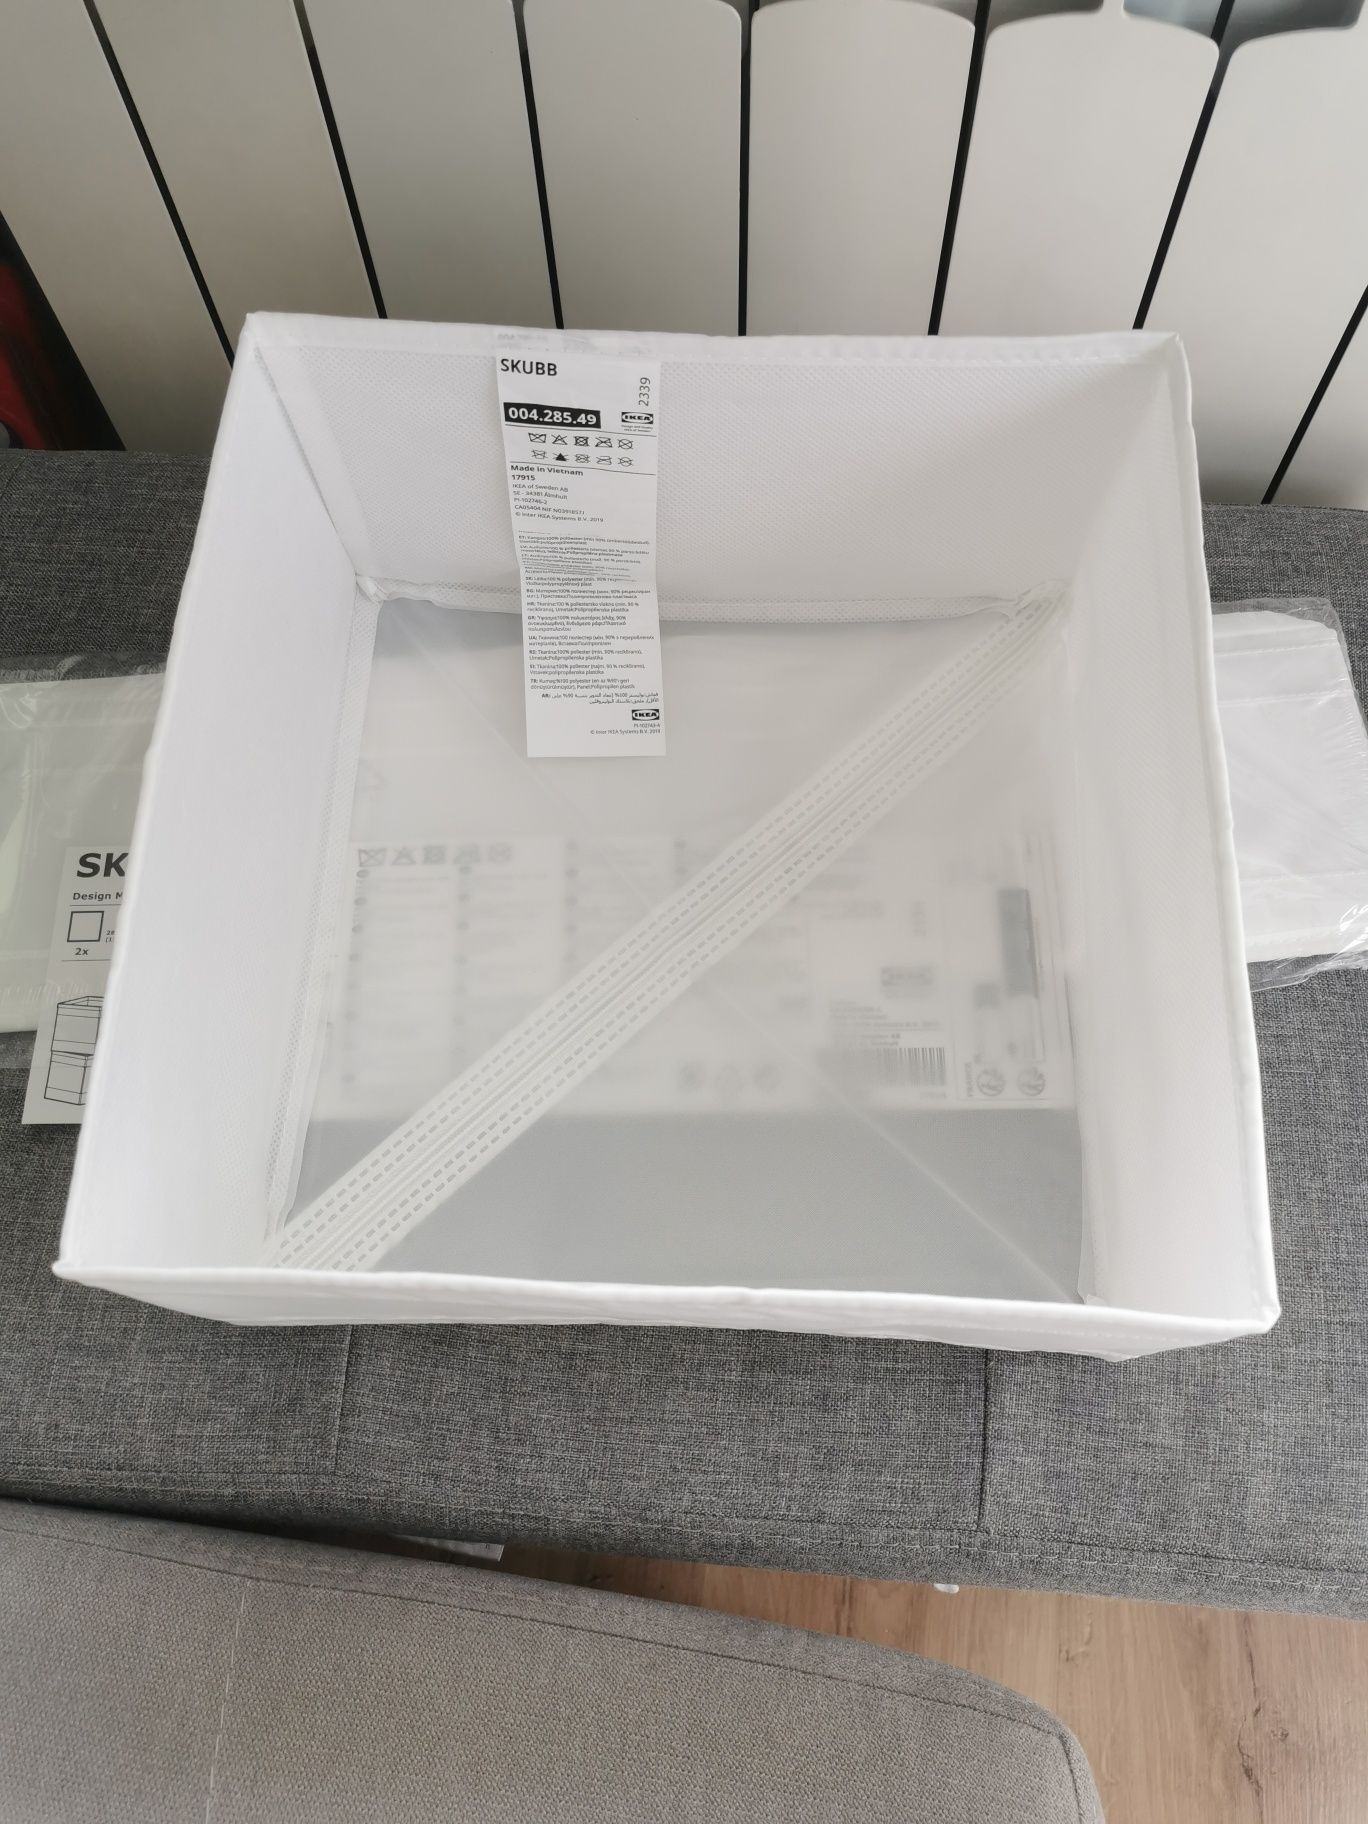 2 pudełka, pojemniki Ikea Skubb, białe, nowe